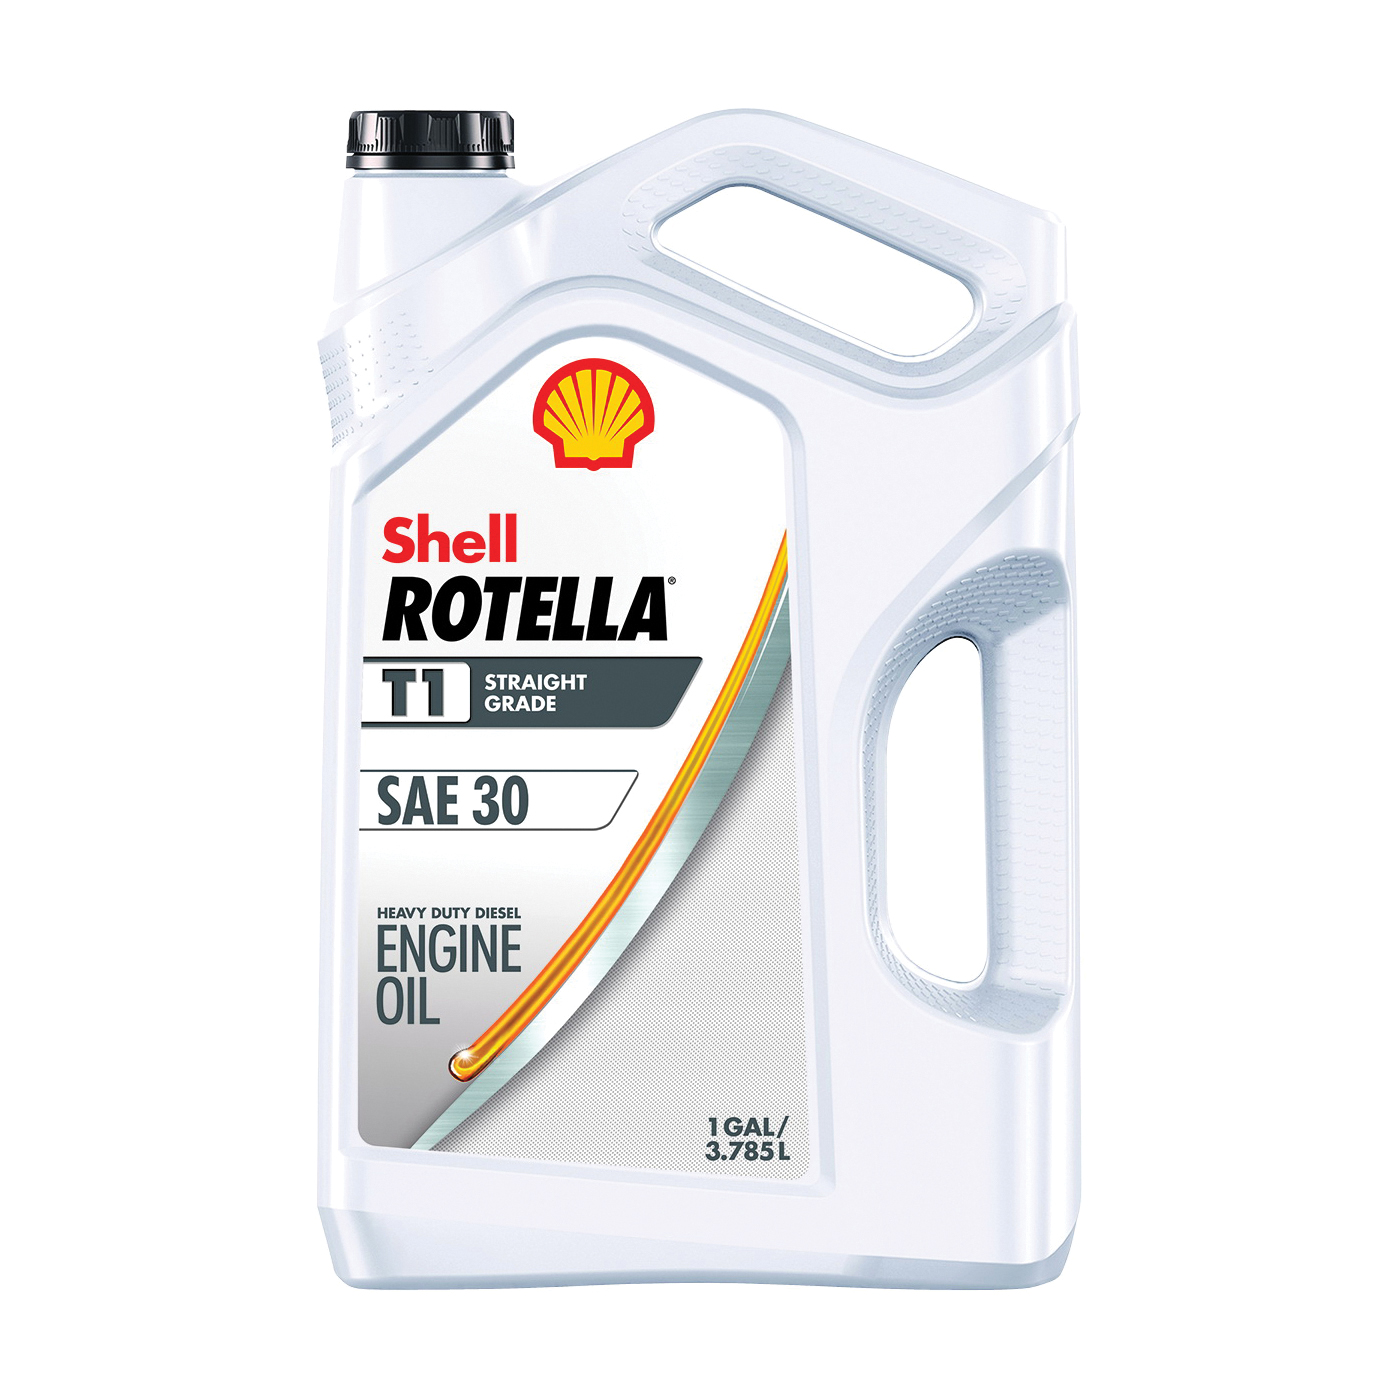 Shell Rotella 550045380